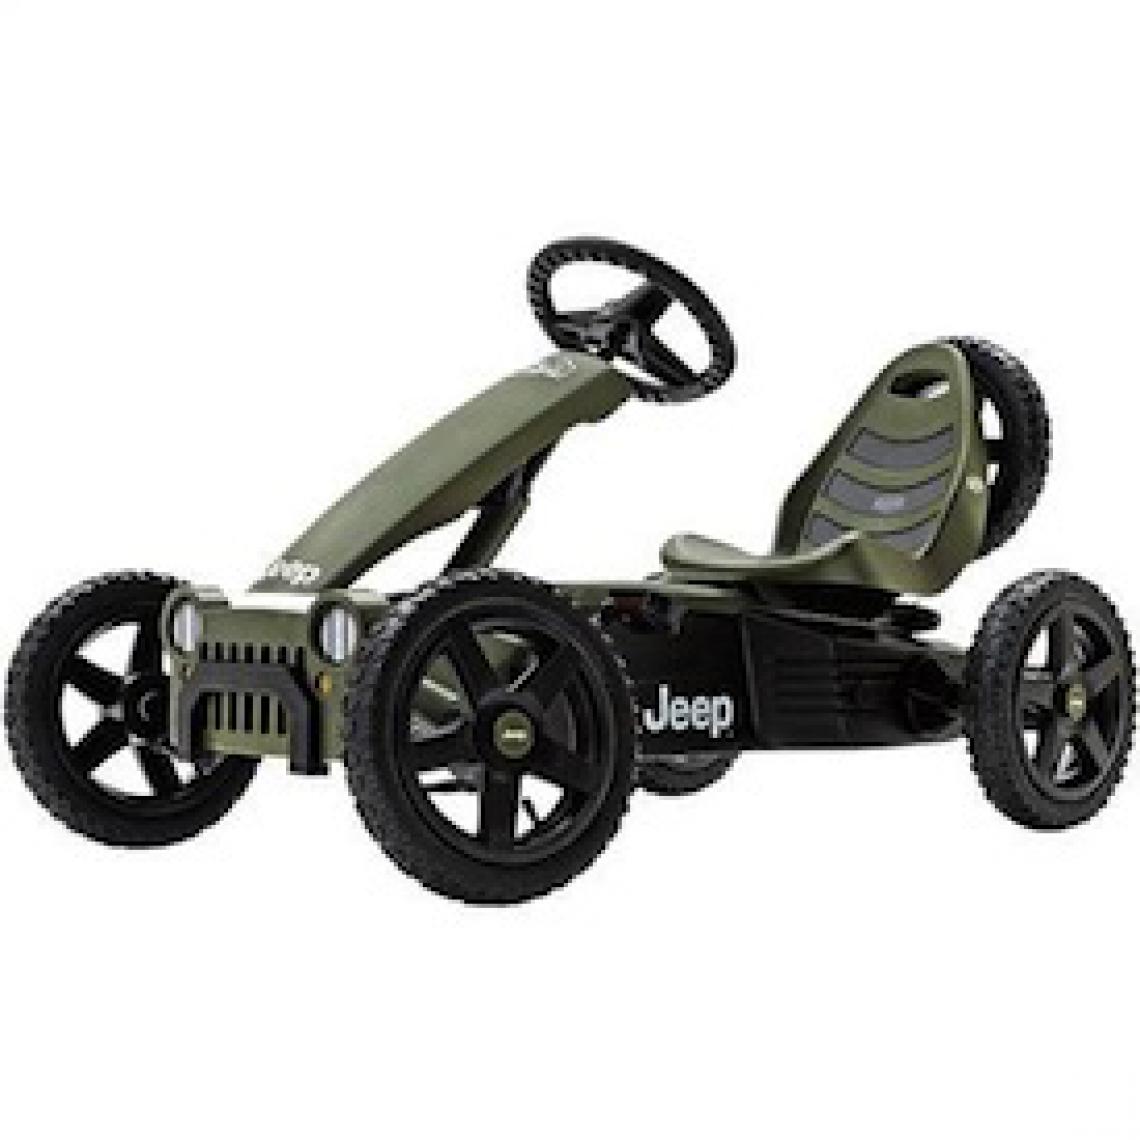 Berg Toys - Kart a pedales BERG Jeep Adventure Pedal Go kart - Véhicule à pédales